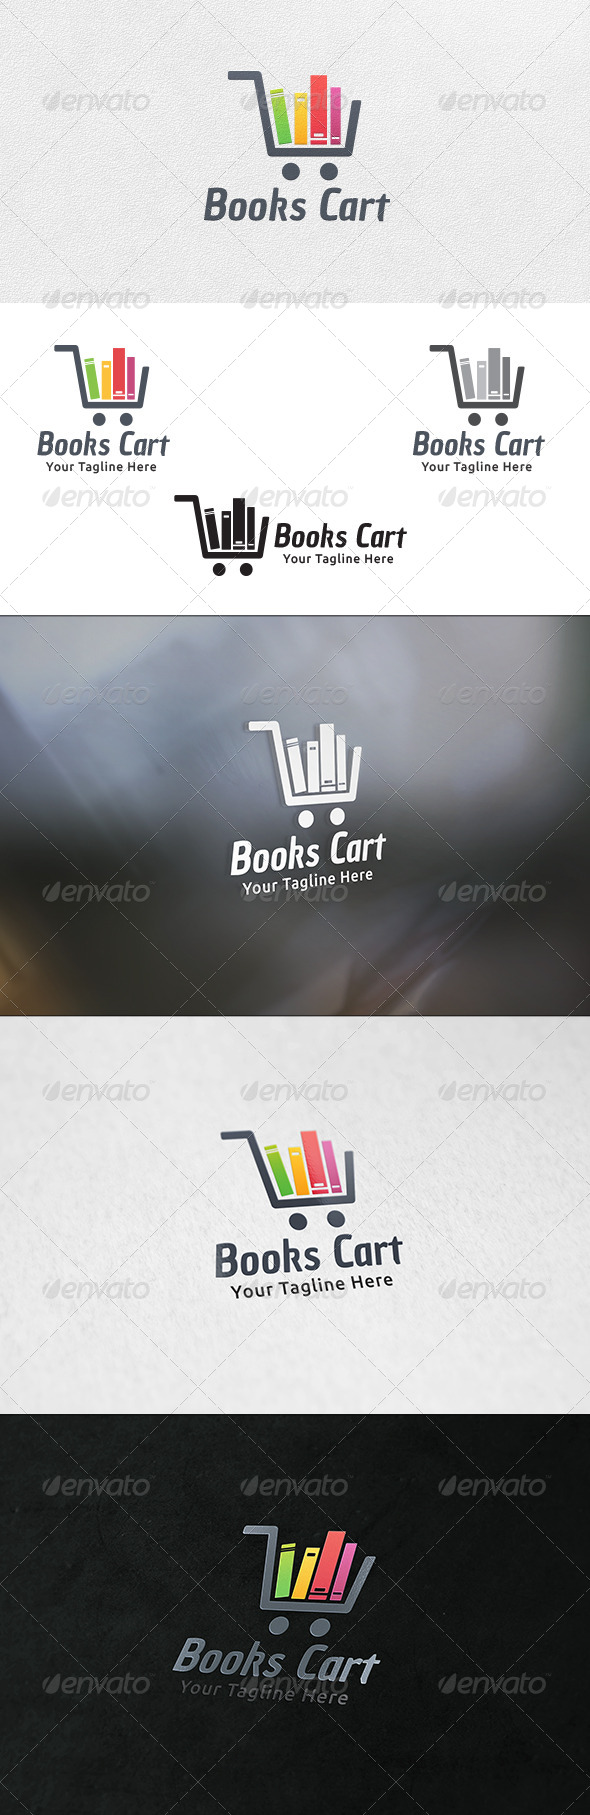 Books Cart - Logo Template